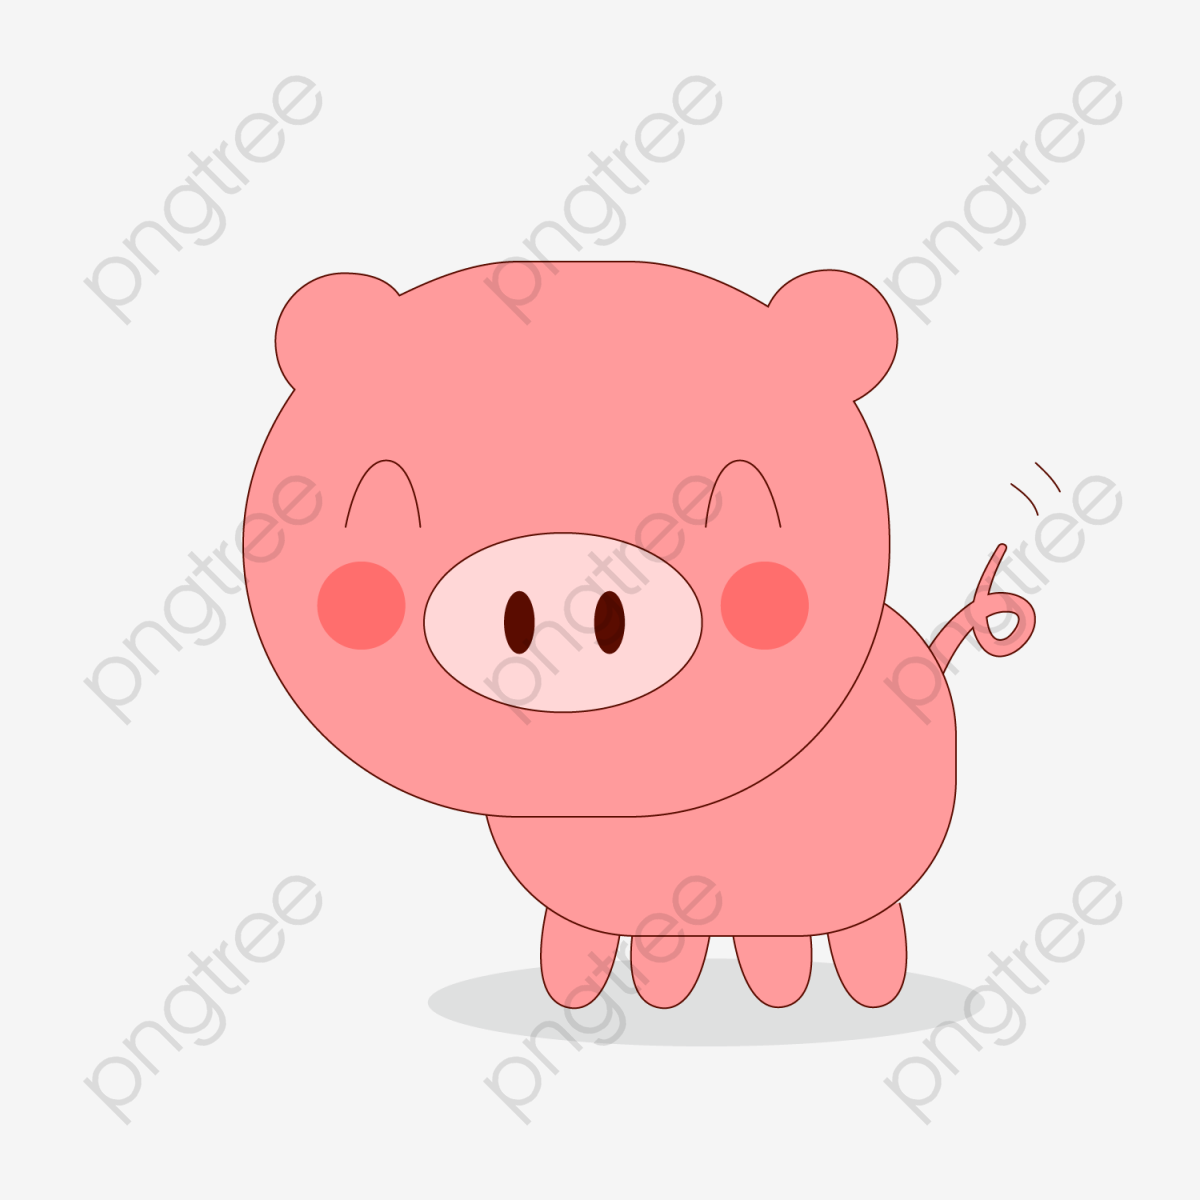 Download Free png Cute Cartoon Pig Vector, Cartoon Clipart